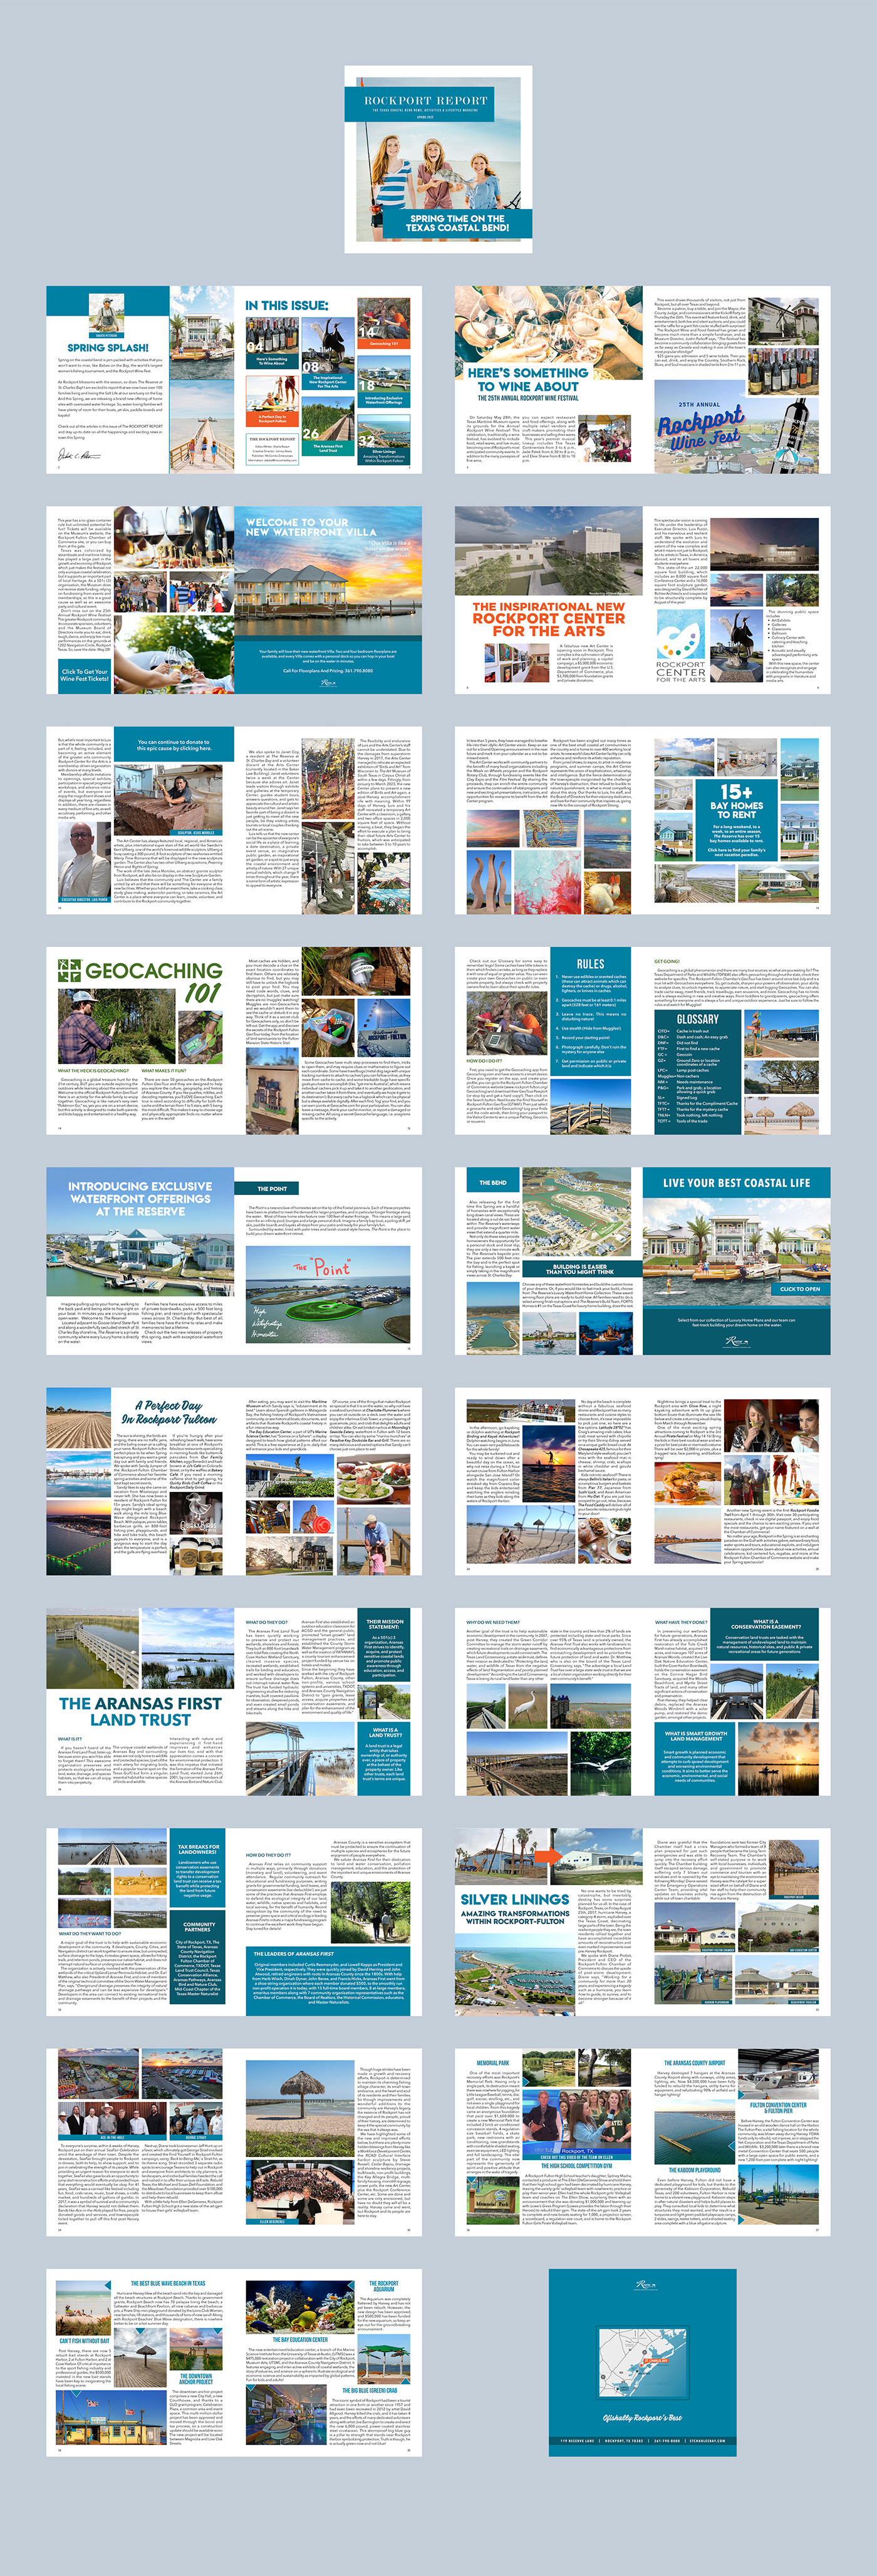 Advertising  book editorial editorial design  graphic design  InDesign Layout magazine Magazine design print